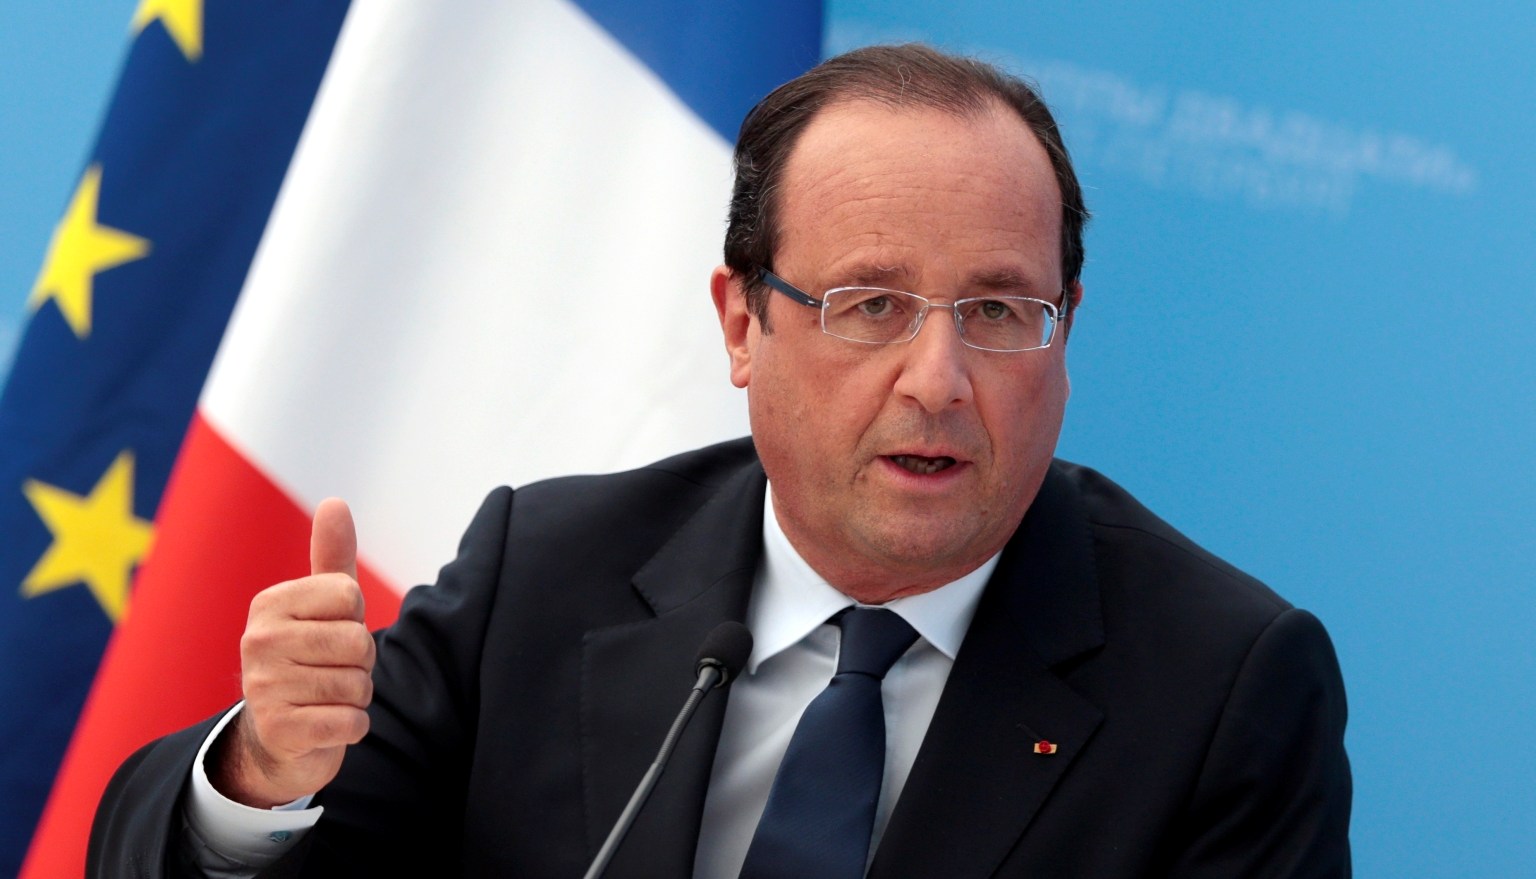 Hollande declara estado de emergencia económica en Francia